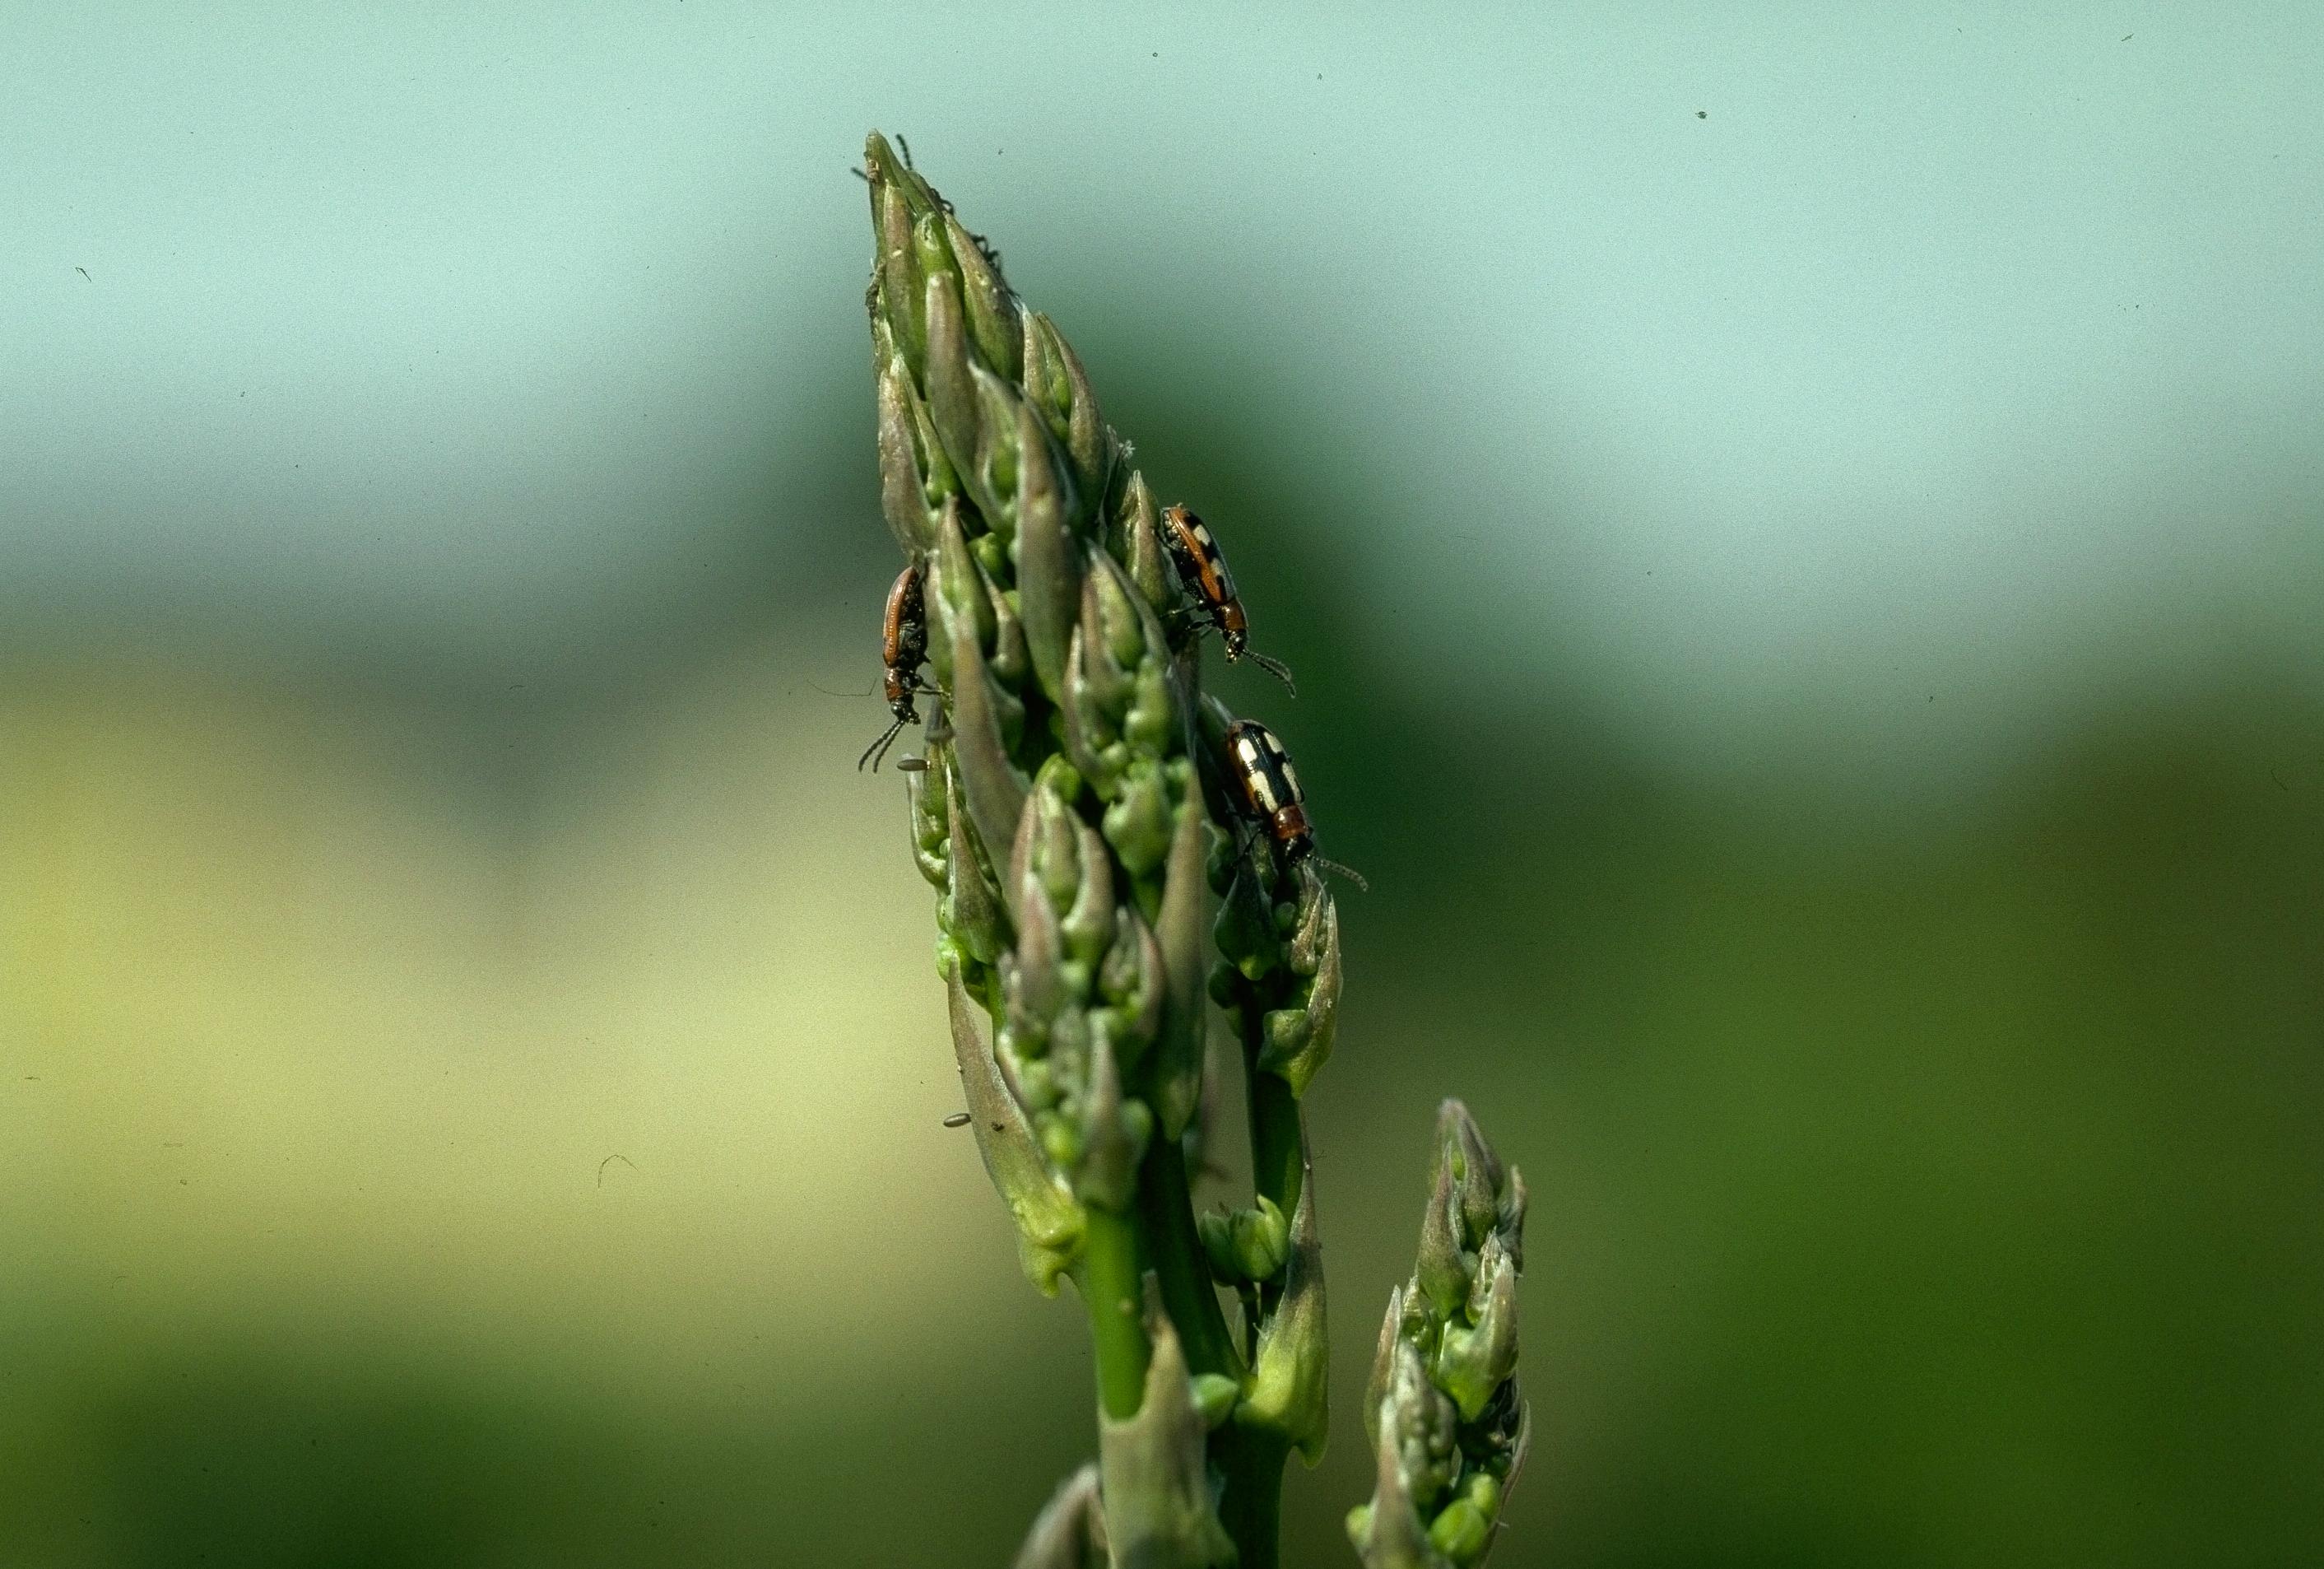 Asparagus beetle on asparagus head